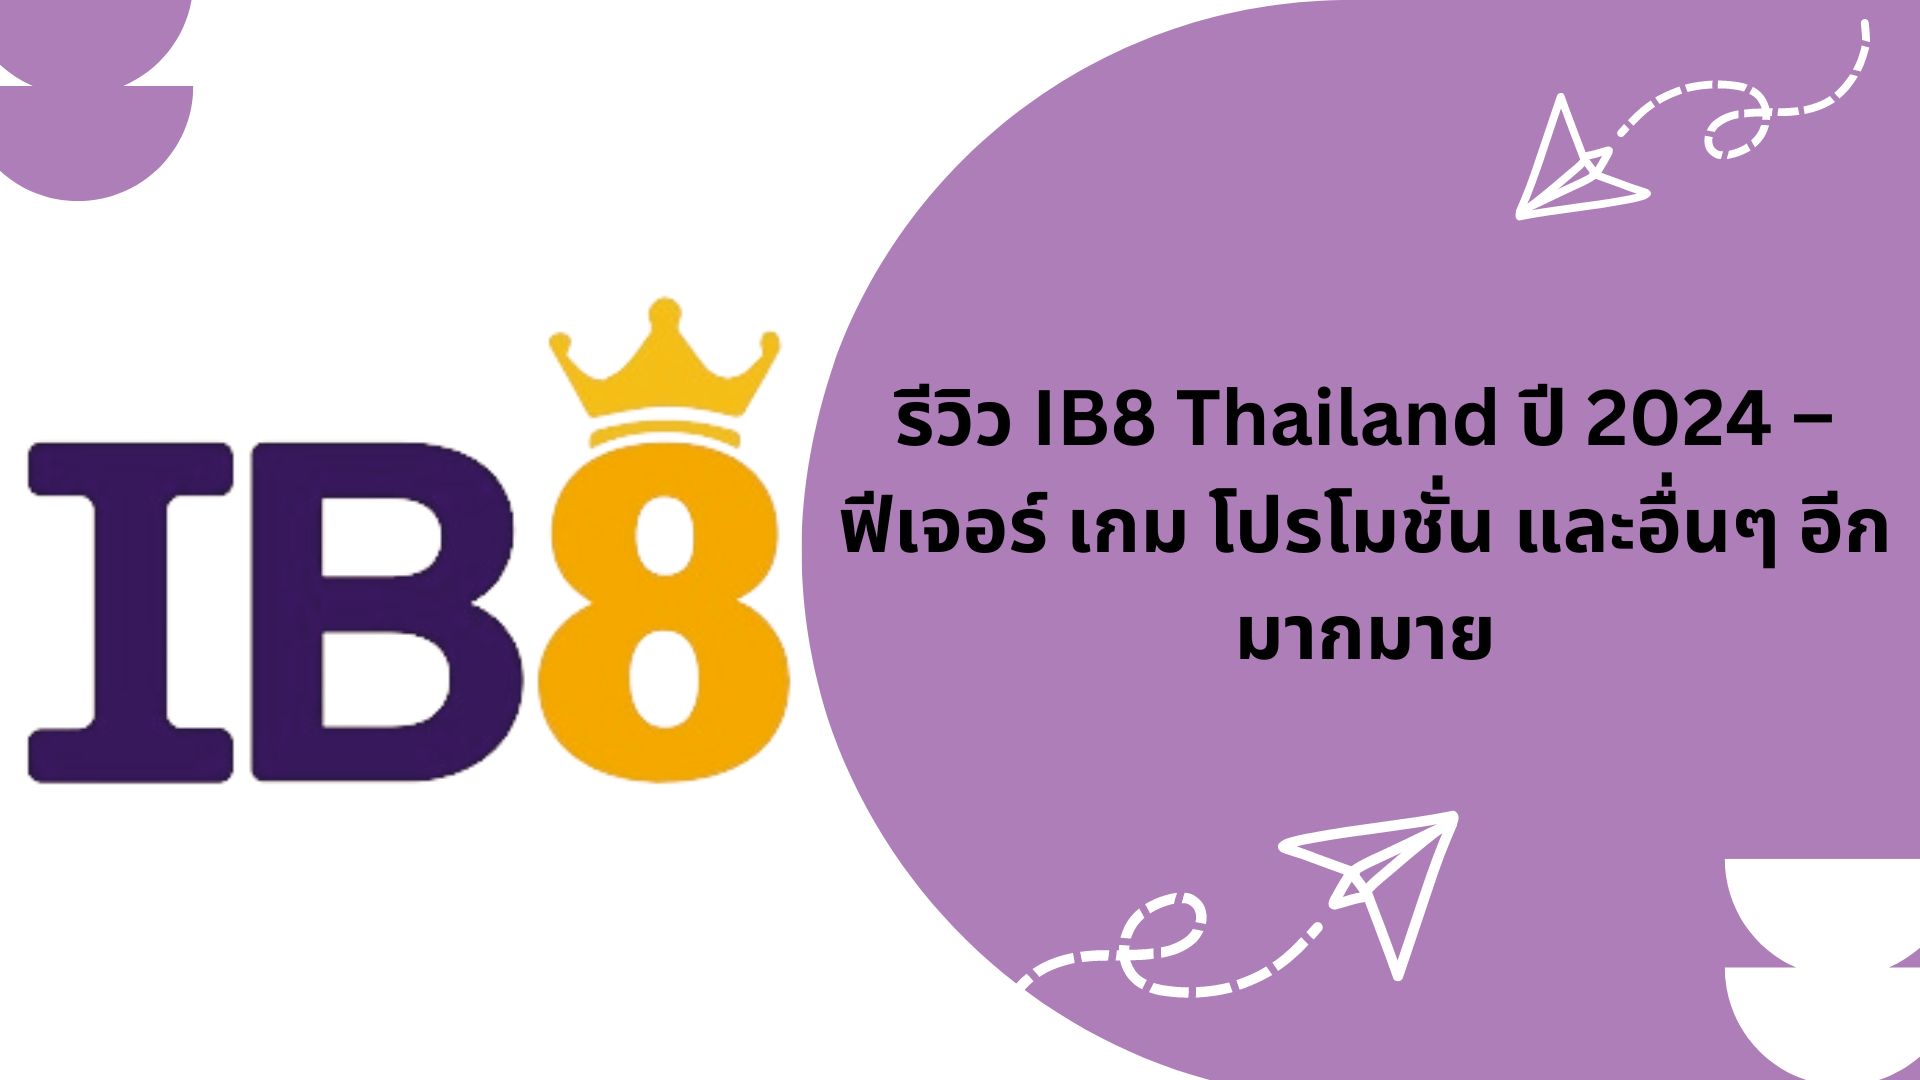 รีวิว IB8 Thailand ปี